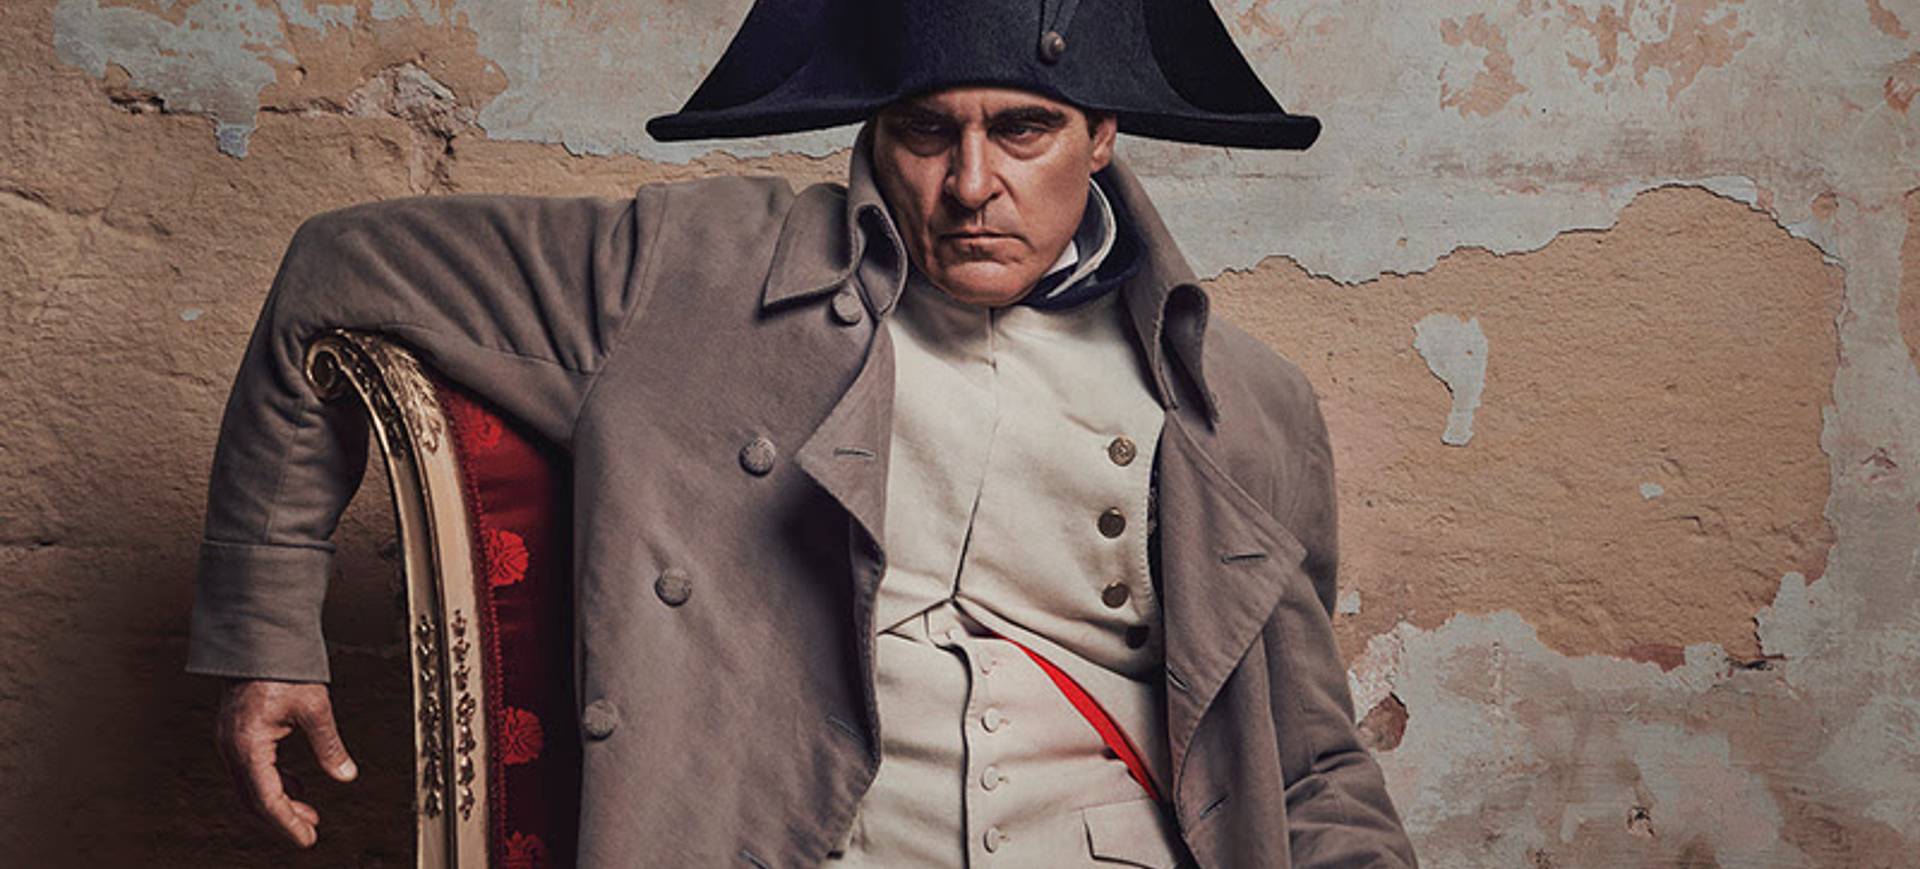 Pôster do longa Napoleão, que aparece o ator Joaquin Phoenix vestido como o imperador com seu icônico chapéu, sentado em uma cadeira